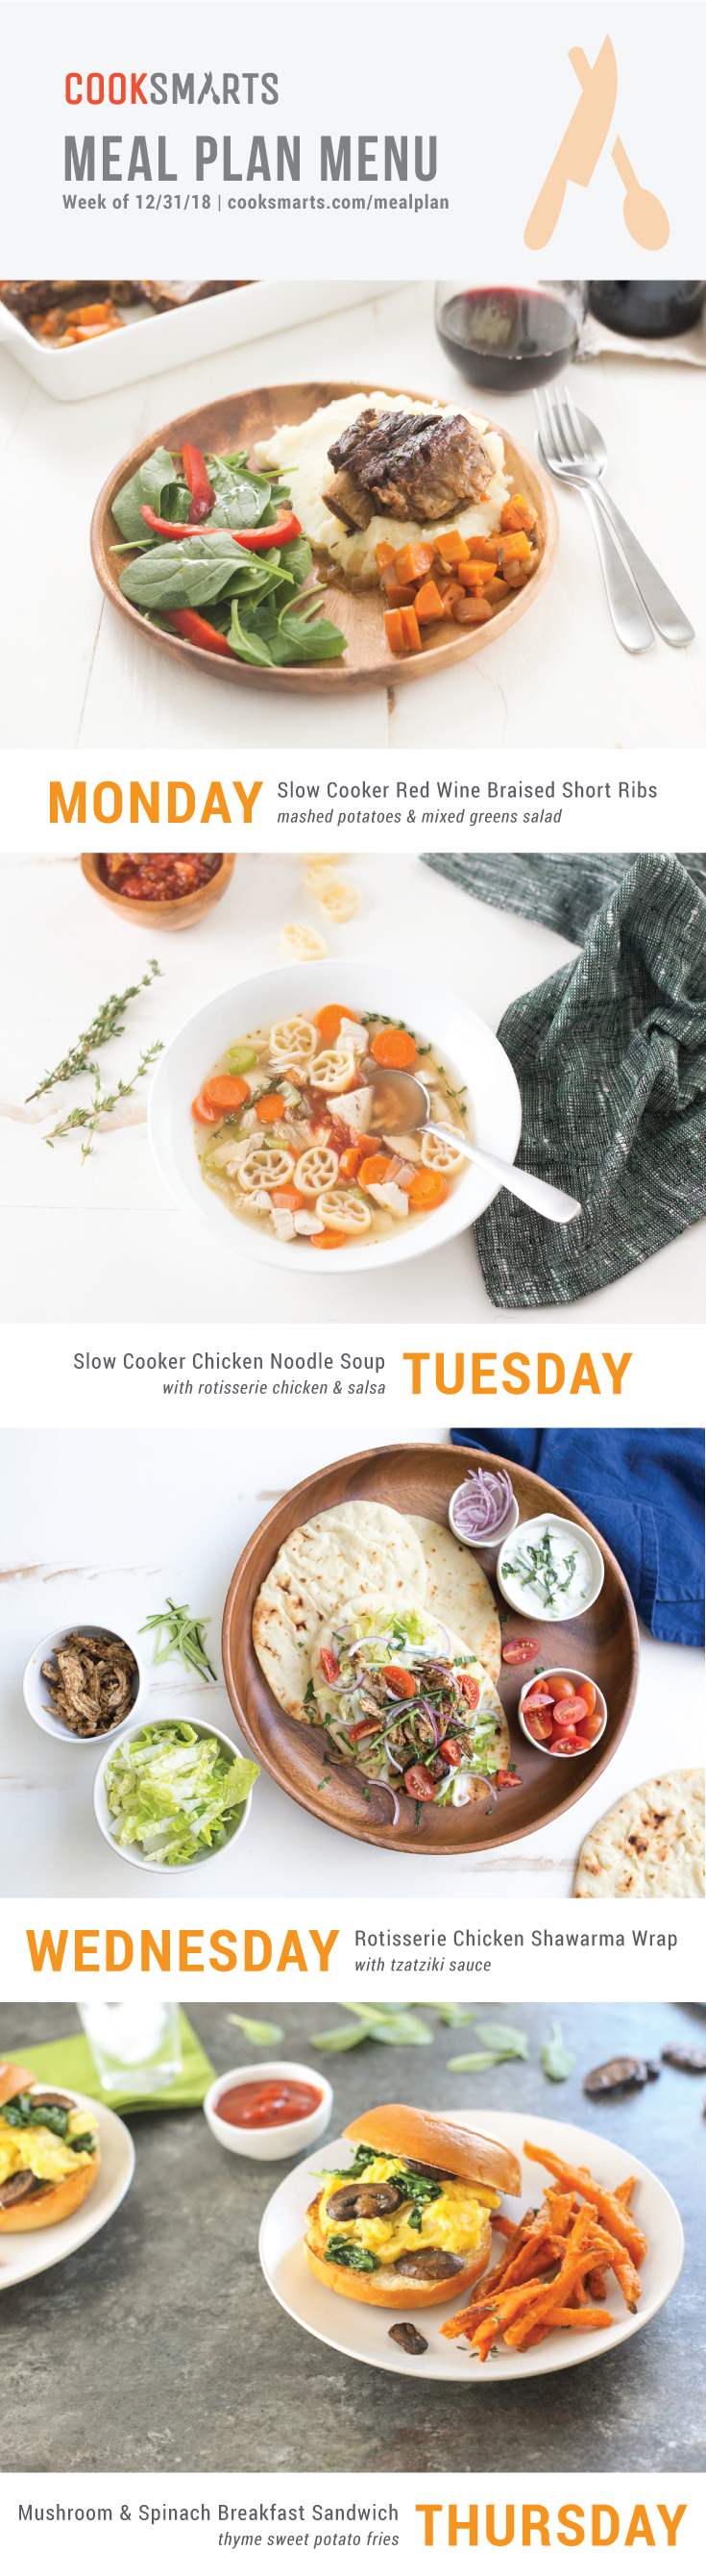 Weekly Meal Planner | Menu for Week of 12/31/18 via Cook Smarts